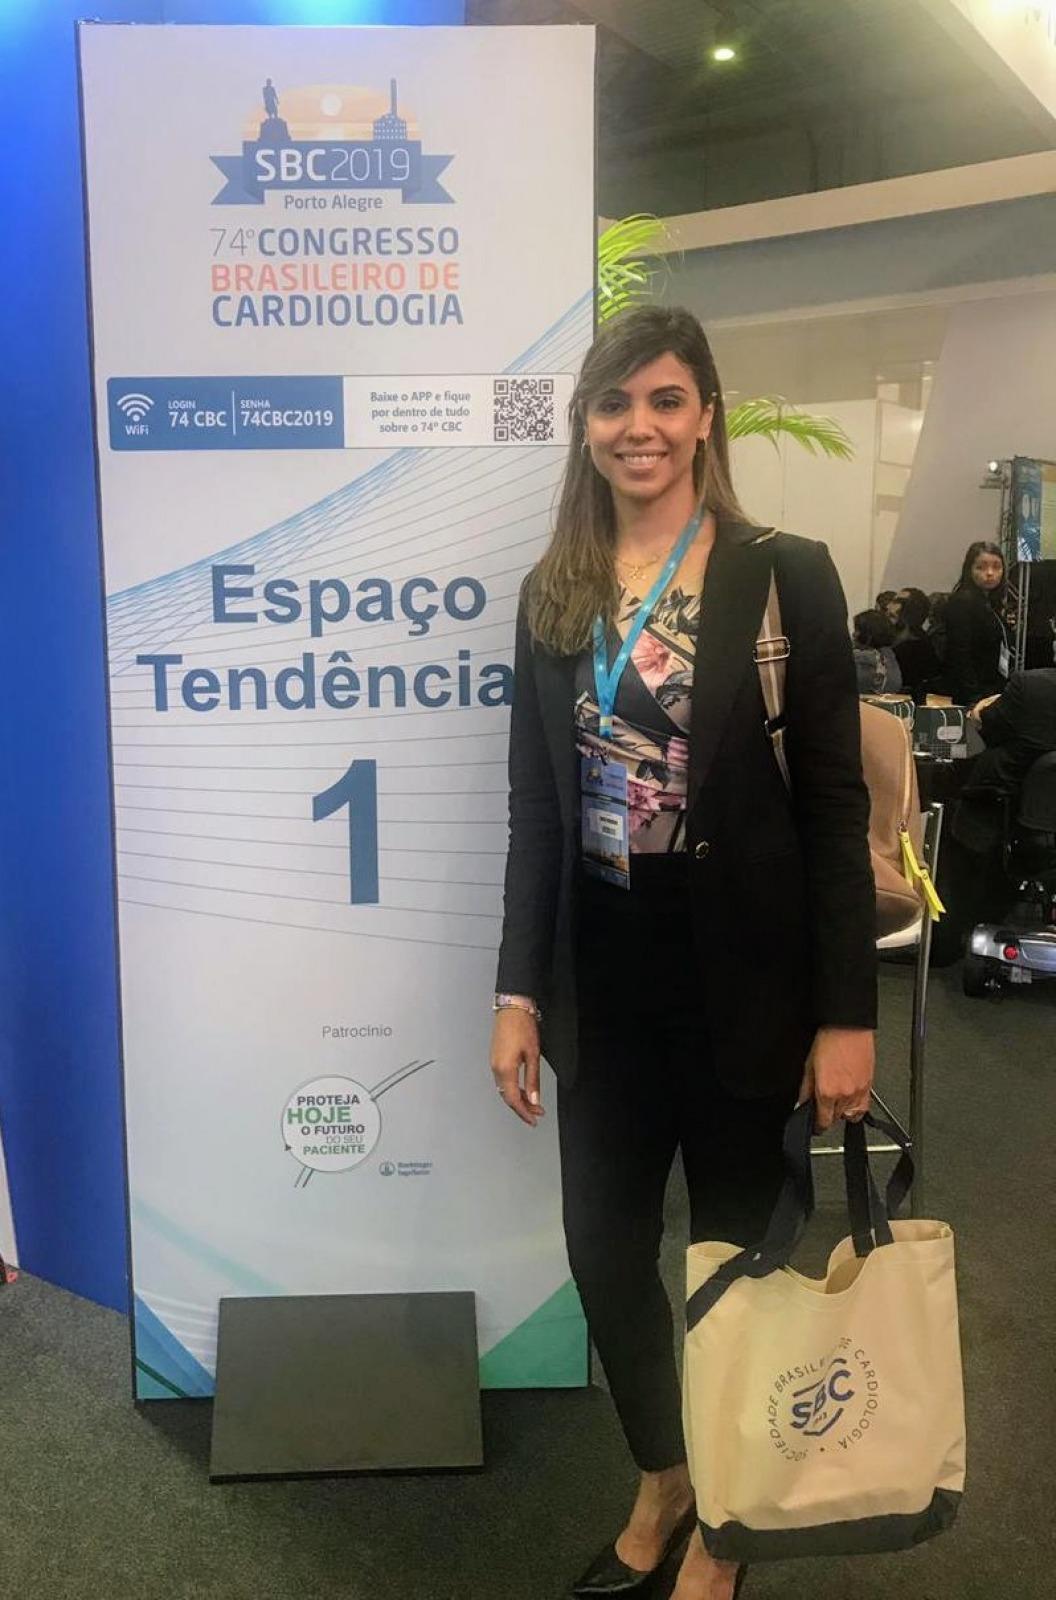 74º Congresso Brasileiro de Cardiologia